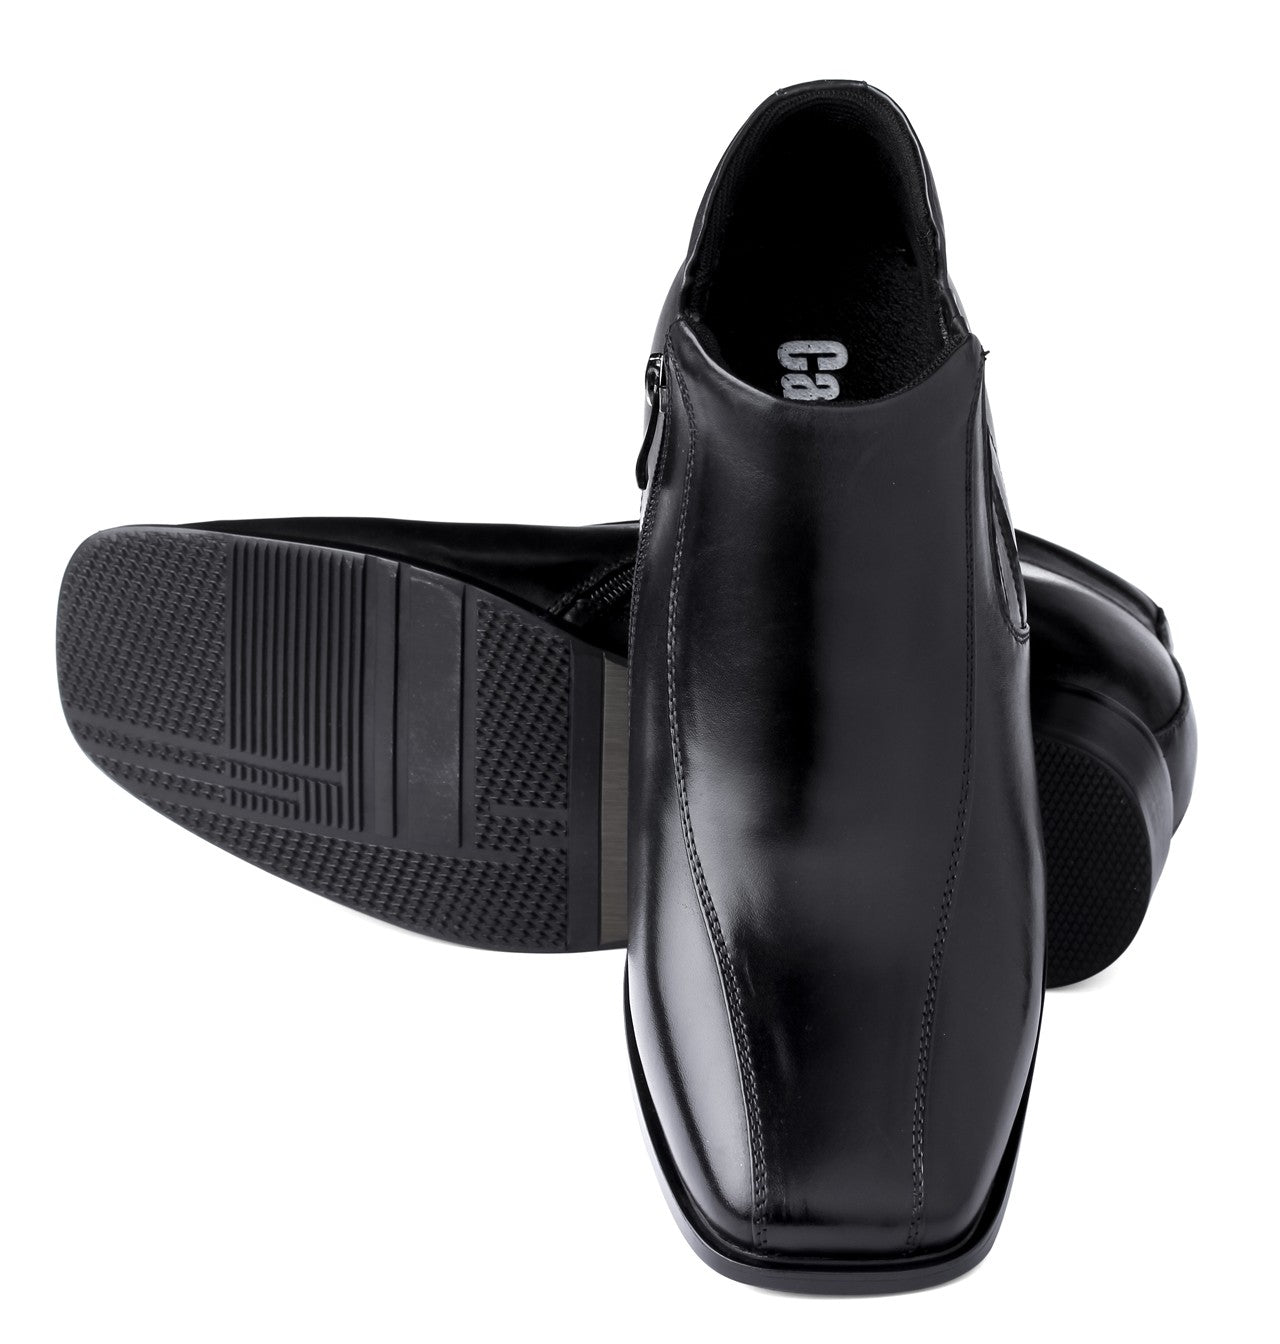 CALDEN - K99805 - 3.2 Inches Taller (Black) Zipper Boots